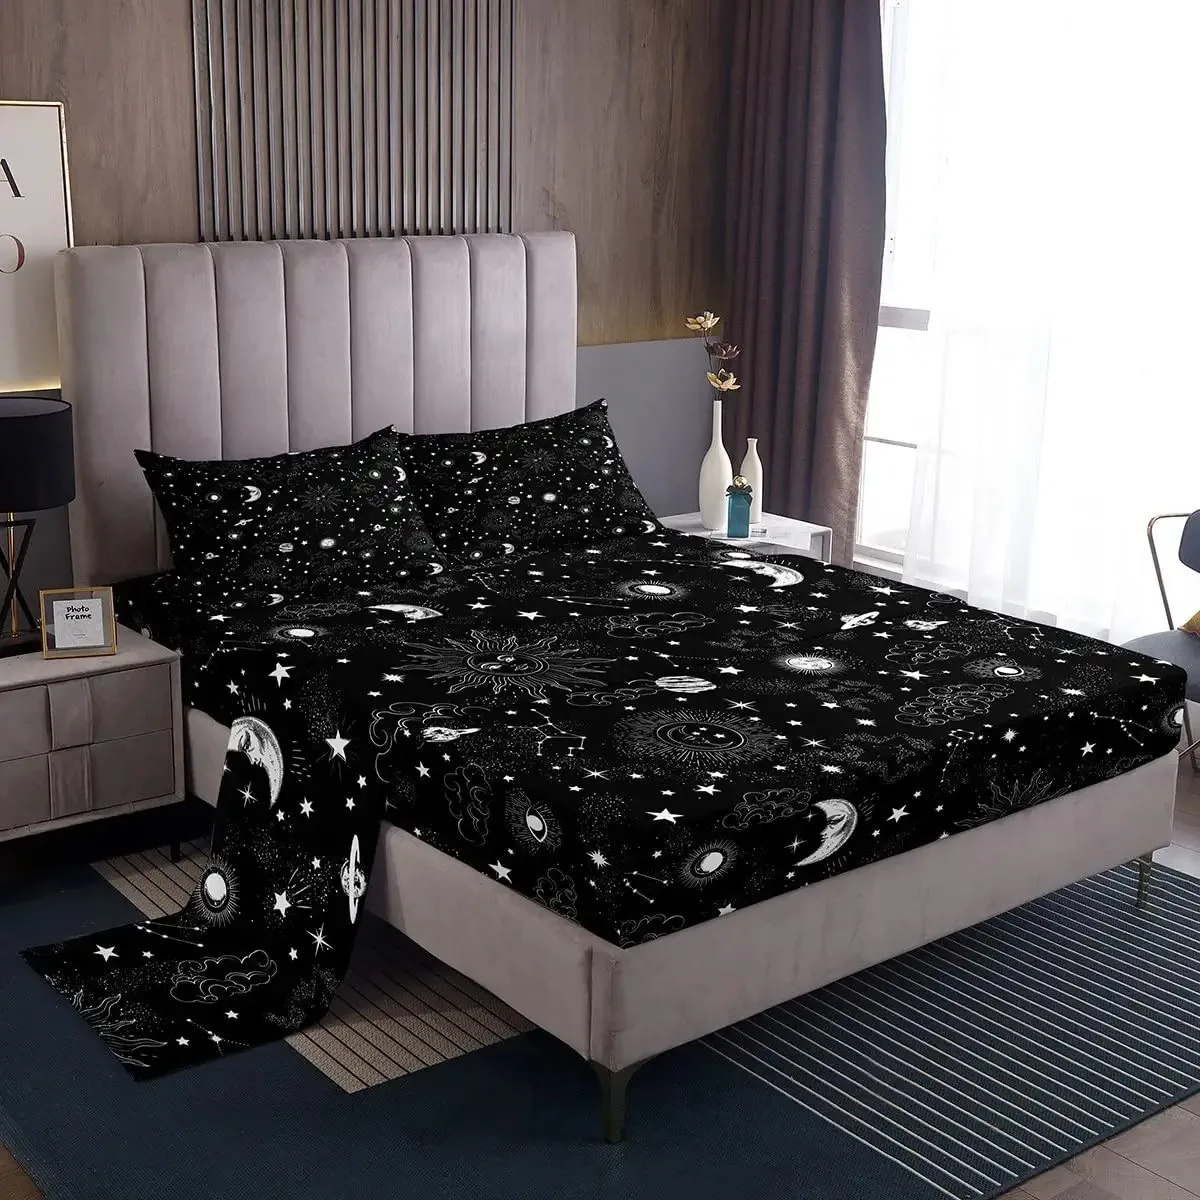 Комплект постельного белья Galaxy, комплект из 4 простыней с созвездиями, с принтом Вселенной фиолетового цвета, простыни с глубоким карманом для детей и мужчин и женщин